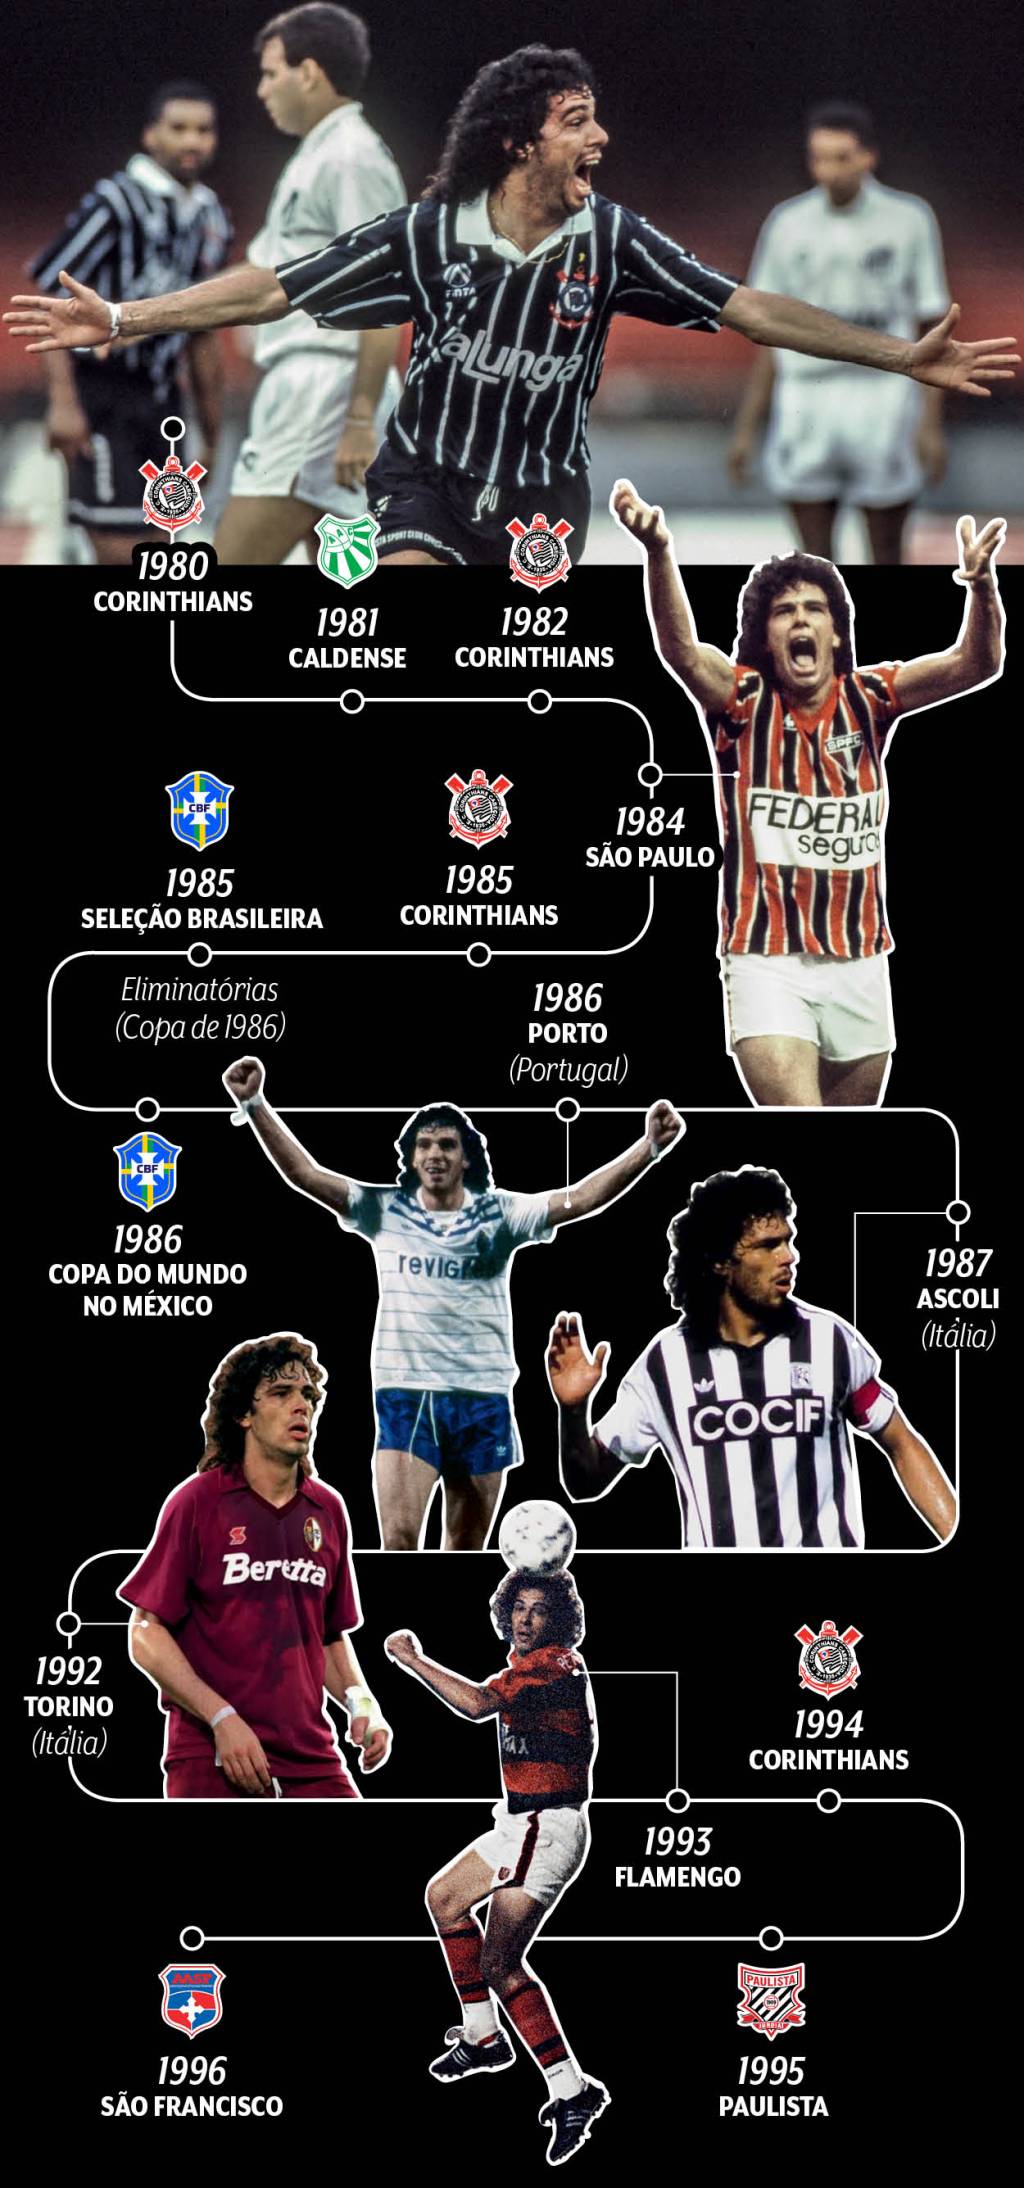 Apesar de ser associado muitas vezes só ao Corinthians, Casagrande jogou em outros oito clubes, sendo três deles estrangeiros. Após participar de cerca de 550 partidas de futebol onde fez 220 gols (números aproximados), ele se aposentou, aos 32 anos, depois de atuar como profissional durante catorze anos